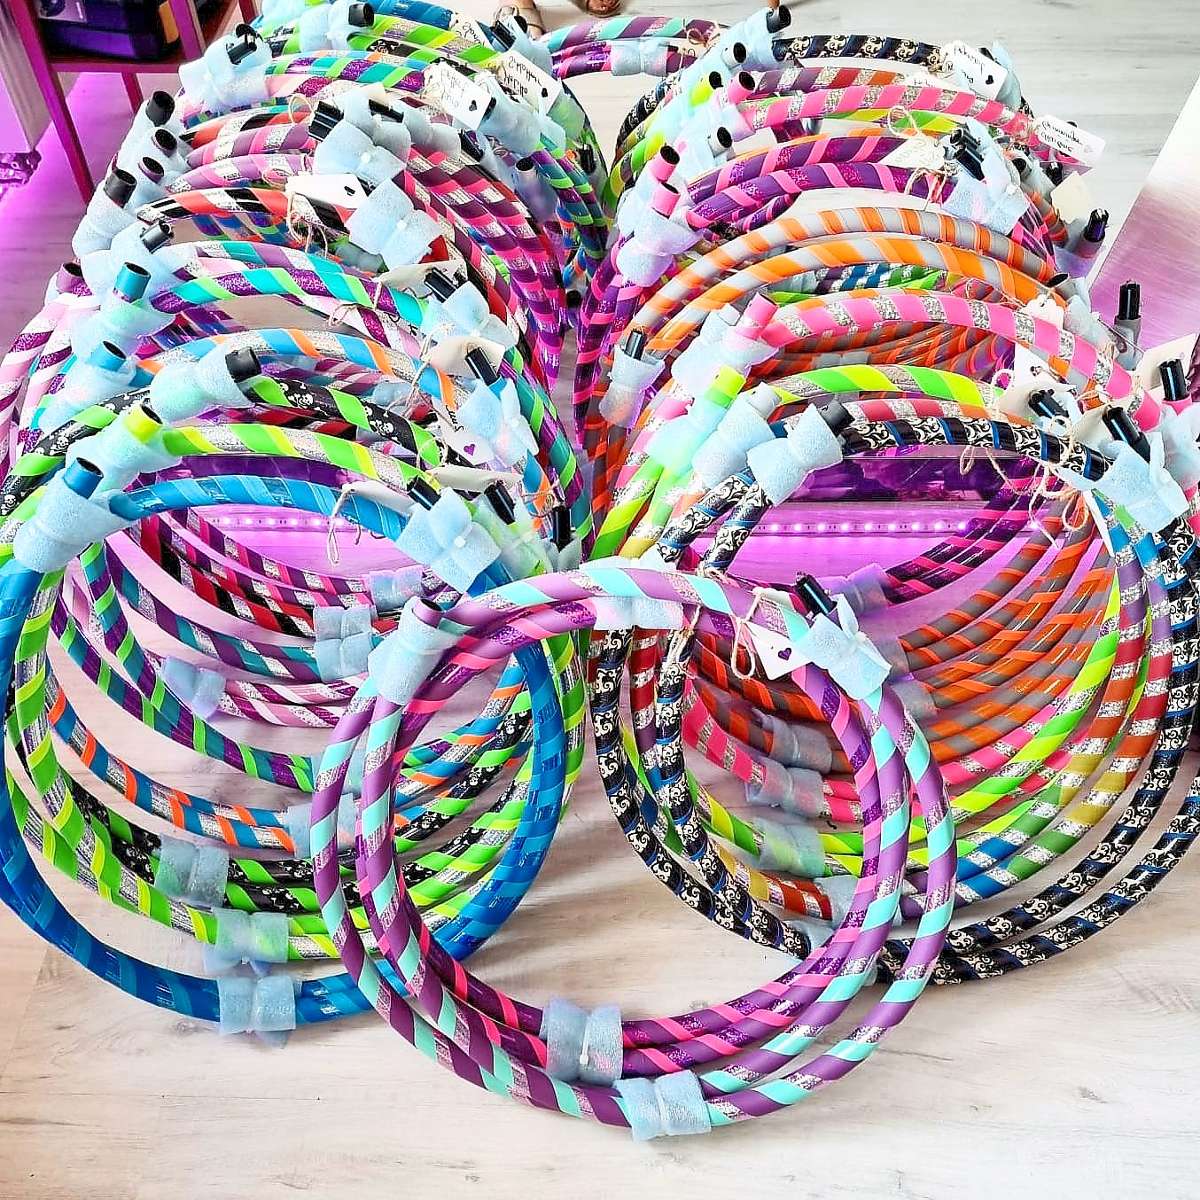 In allen erdenklichen Farben sind die Hula-Hoop-Reifen made in Täbingen zu haben. Quelle: Unbekannt